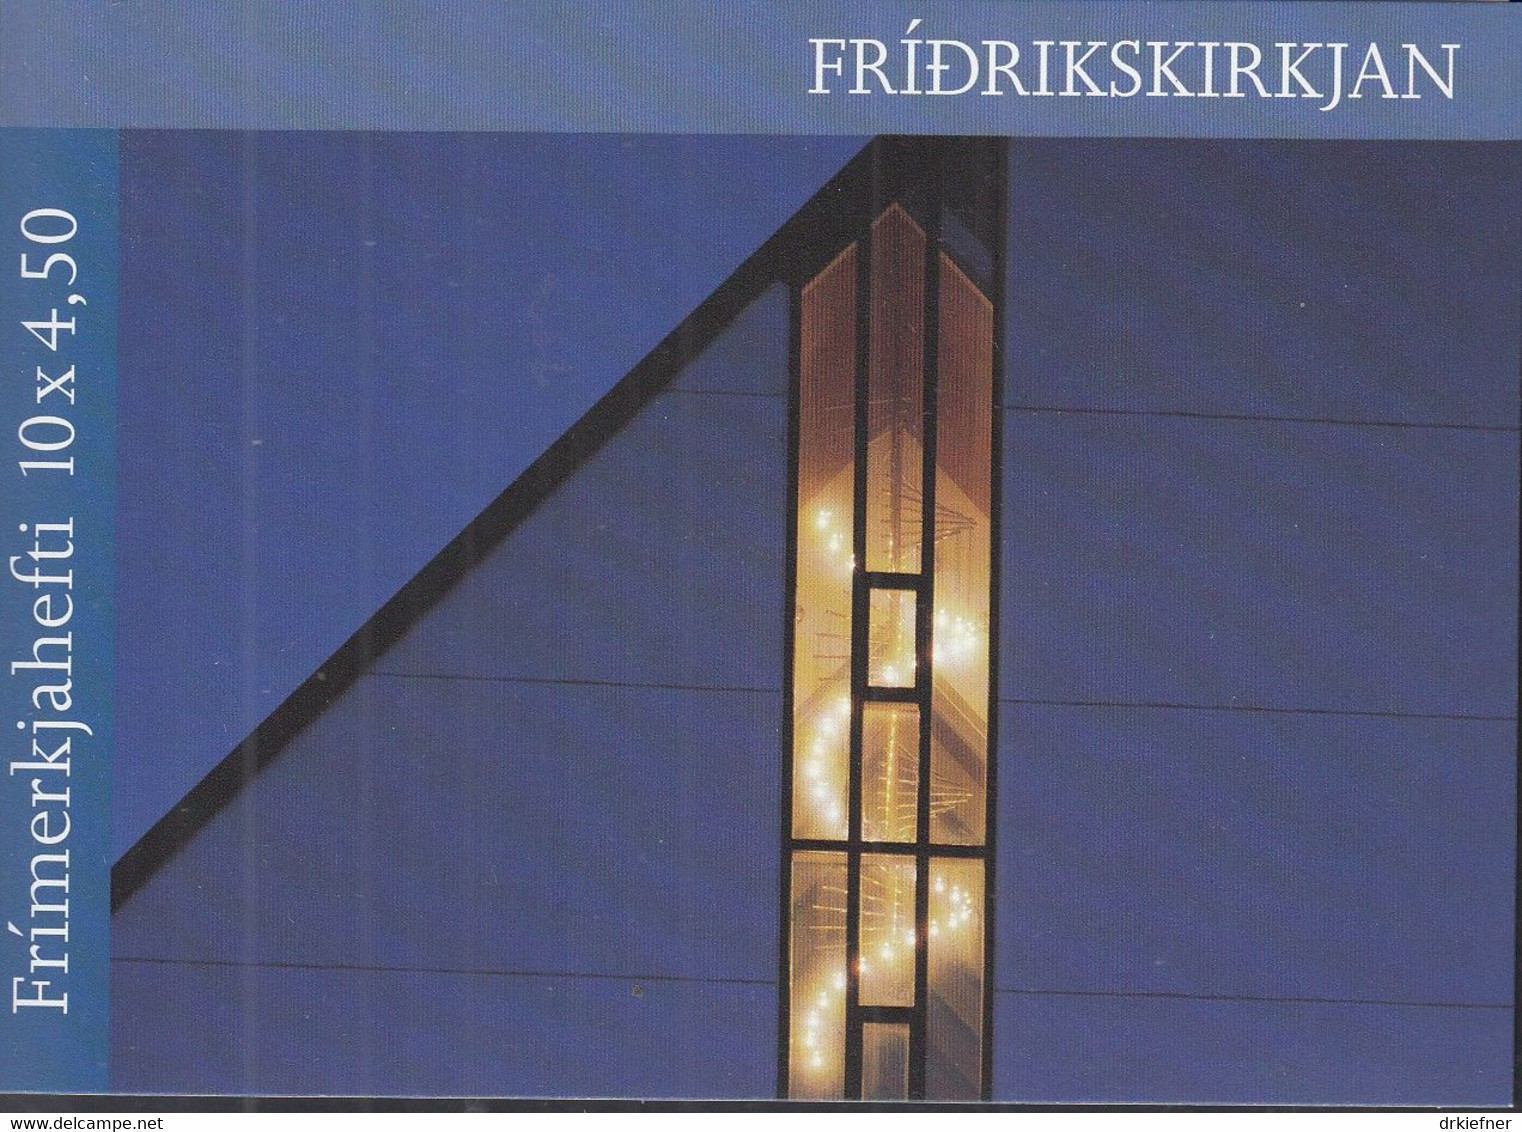 FÄRÖER Markenheftchen MH 16, 5x 345-346, Postfrisch **, Frederikskirche, 1998 - Färöer Inseln